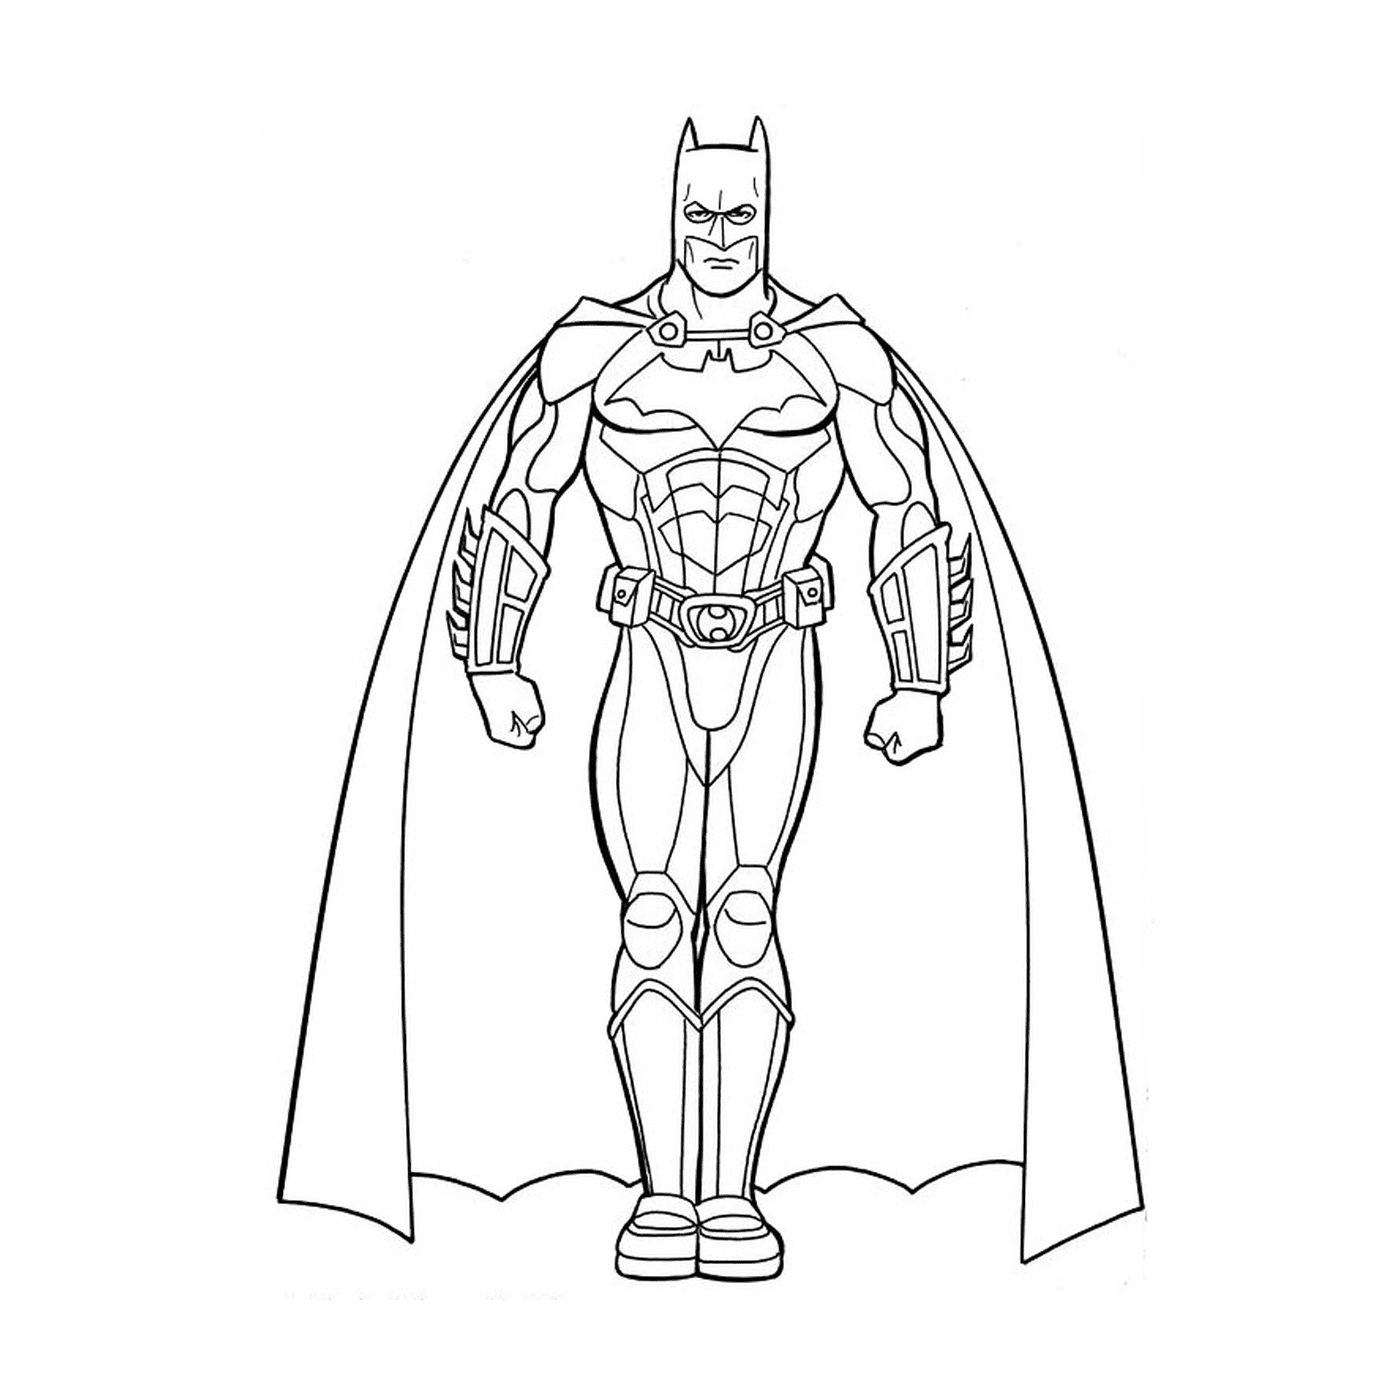  Homem no traje de Batman 